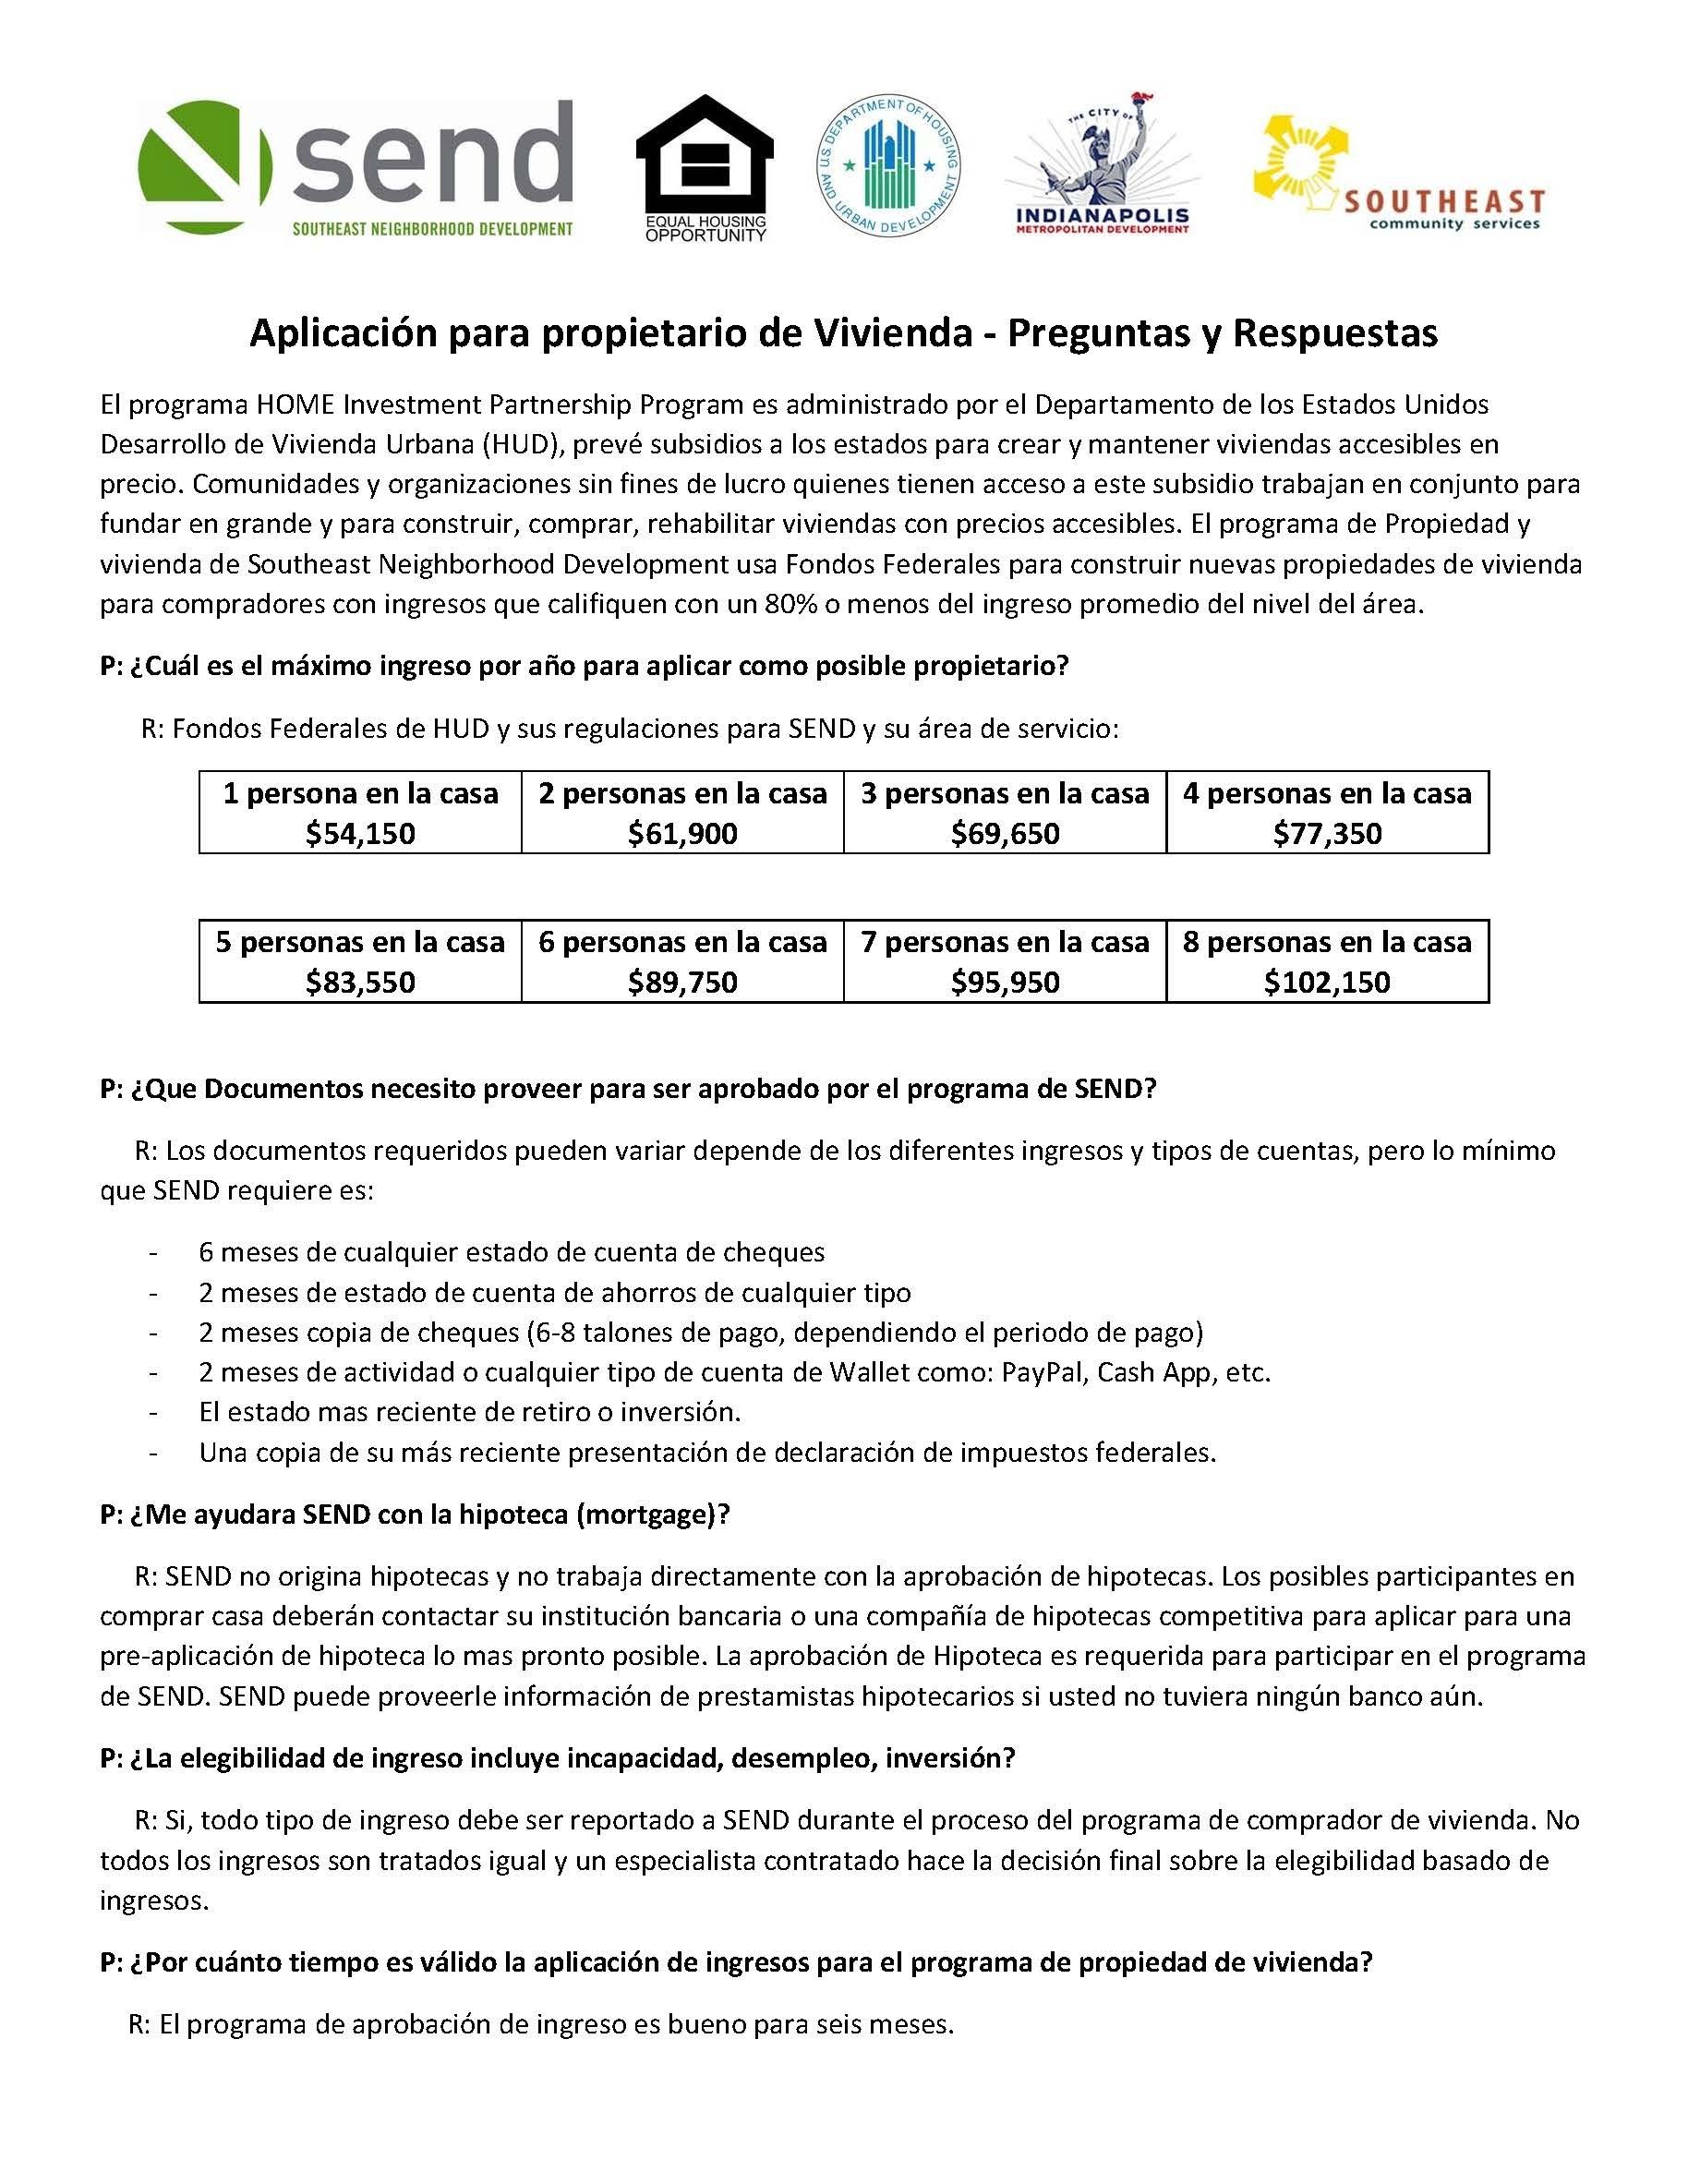 HOME Applicants FAQ En Espanol_Page_1.jpg